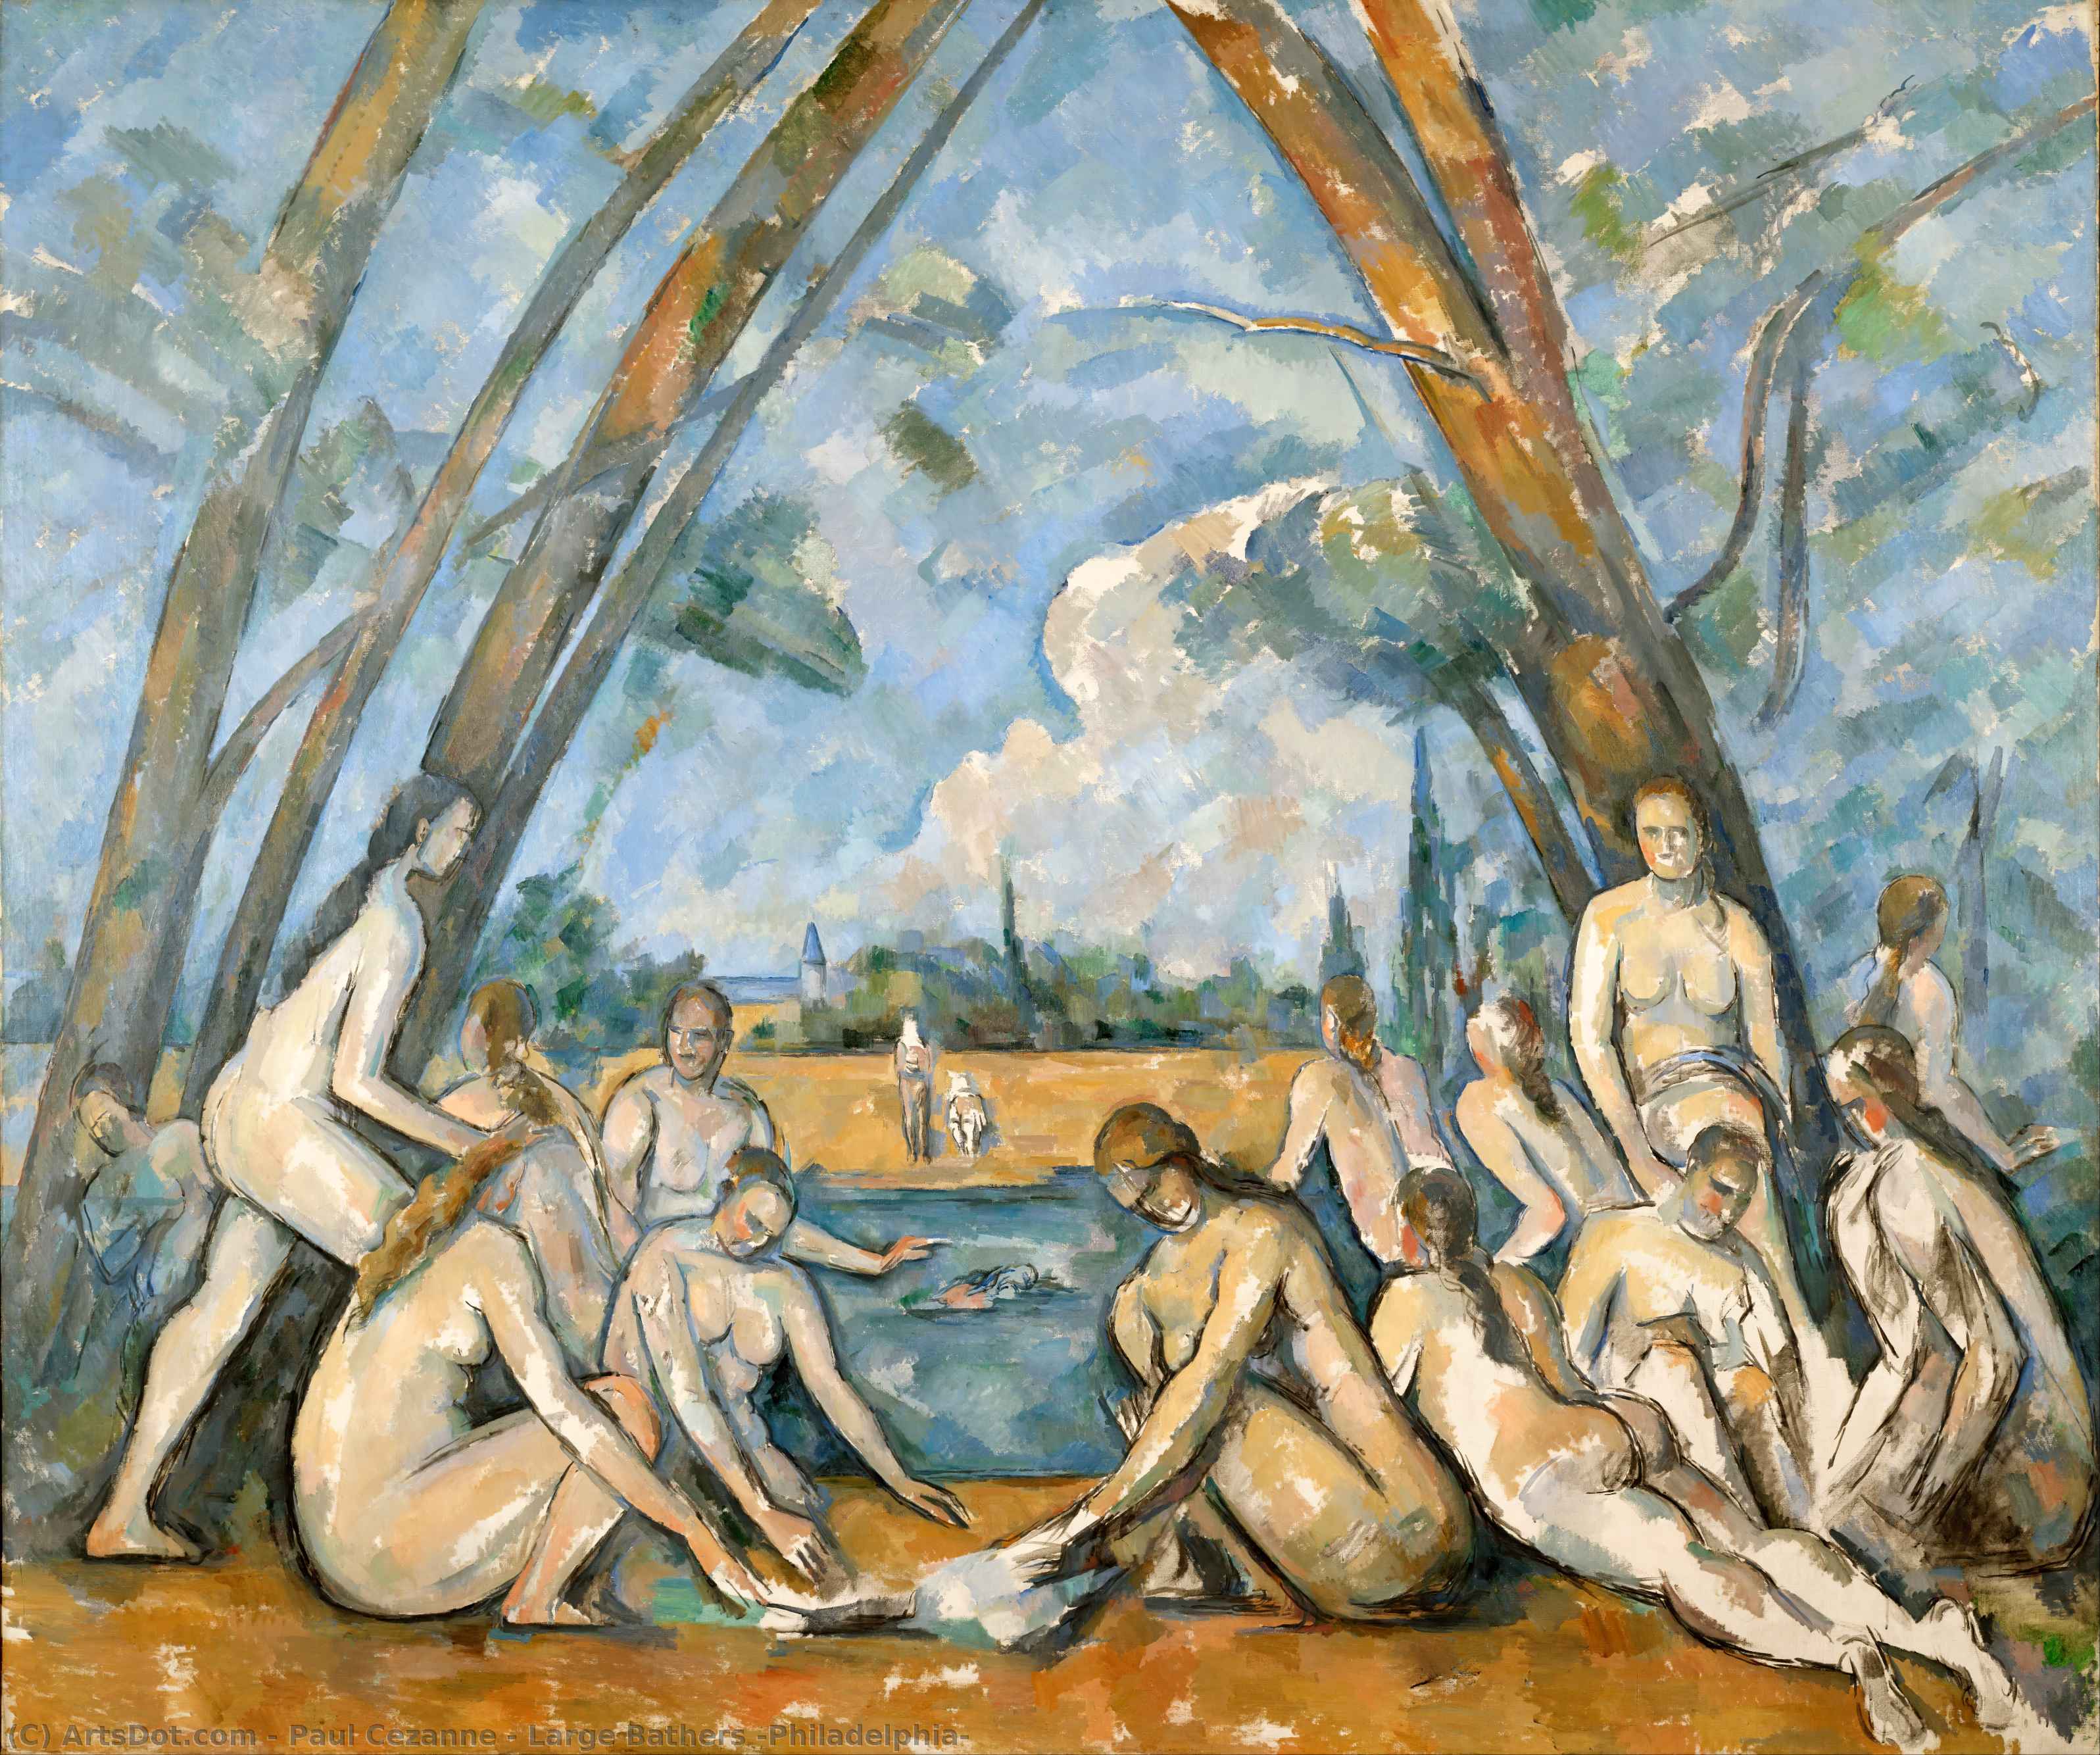 Купить Репродукции Произведений Искусства Большие ванны (Филадельфиа), 1905 по Paul Cezanne (1839-1906, France) | ArtsDot.com